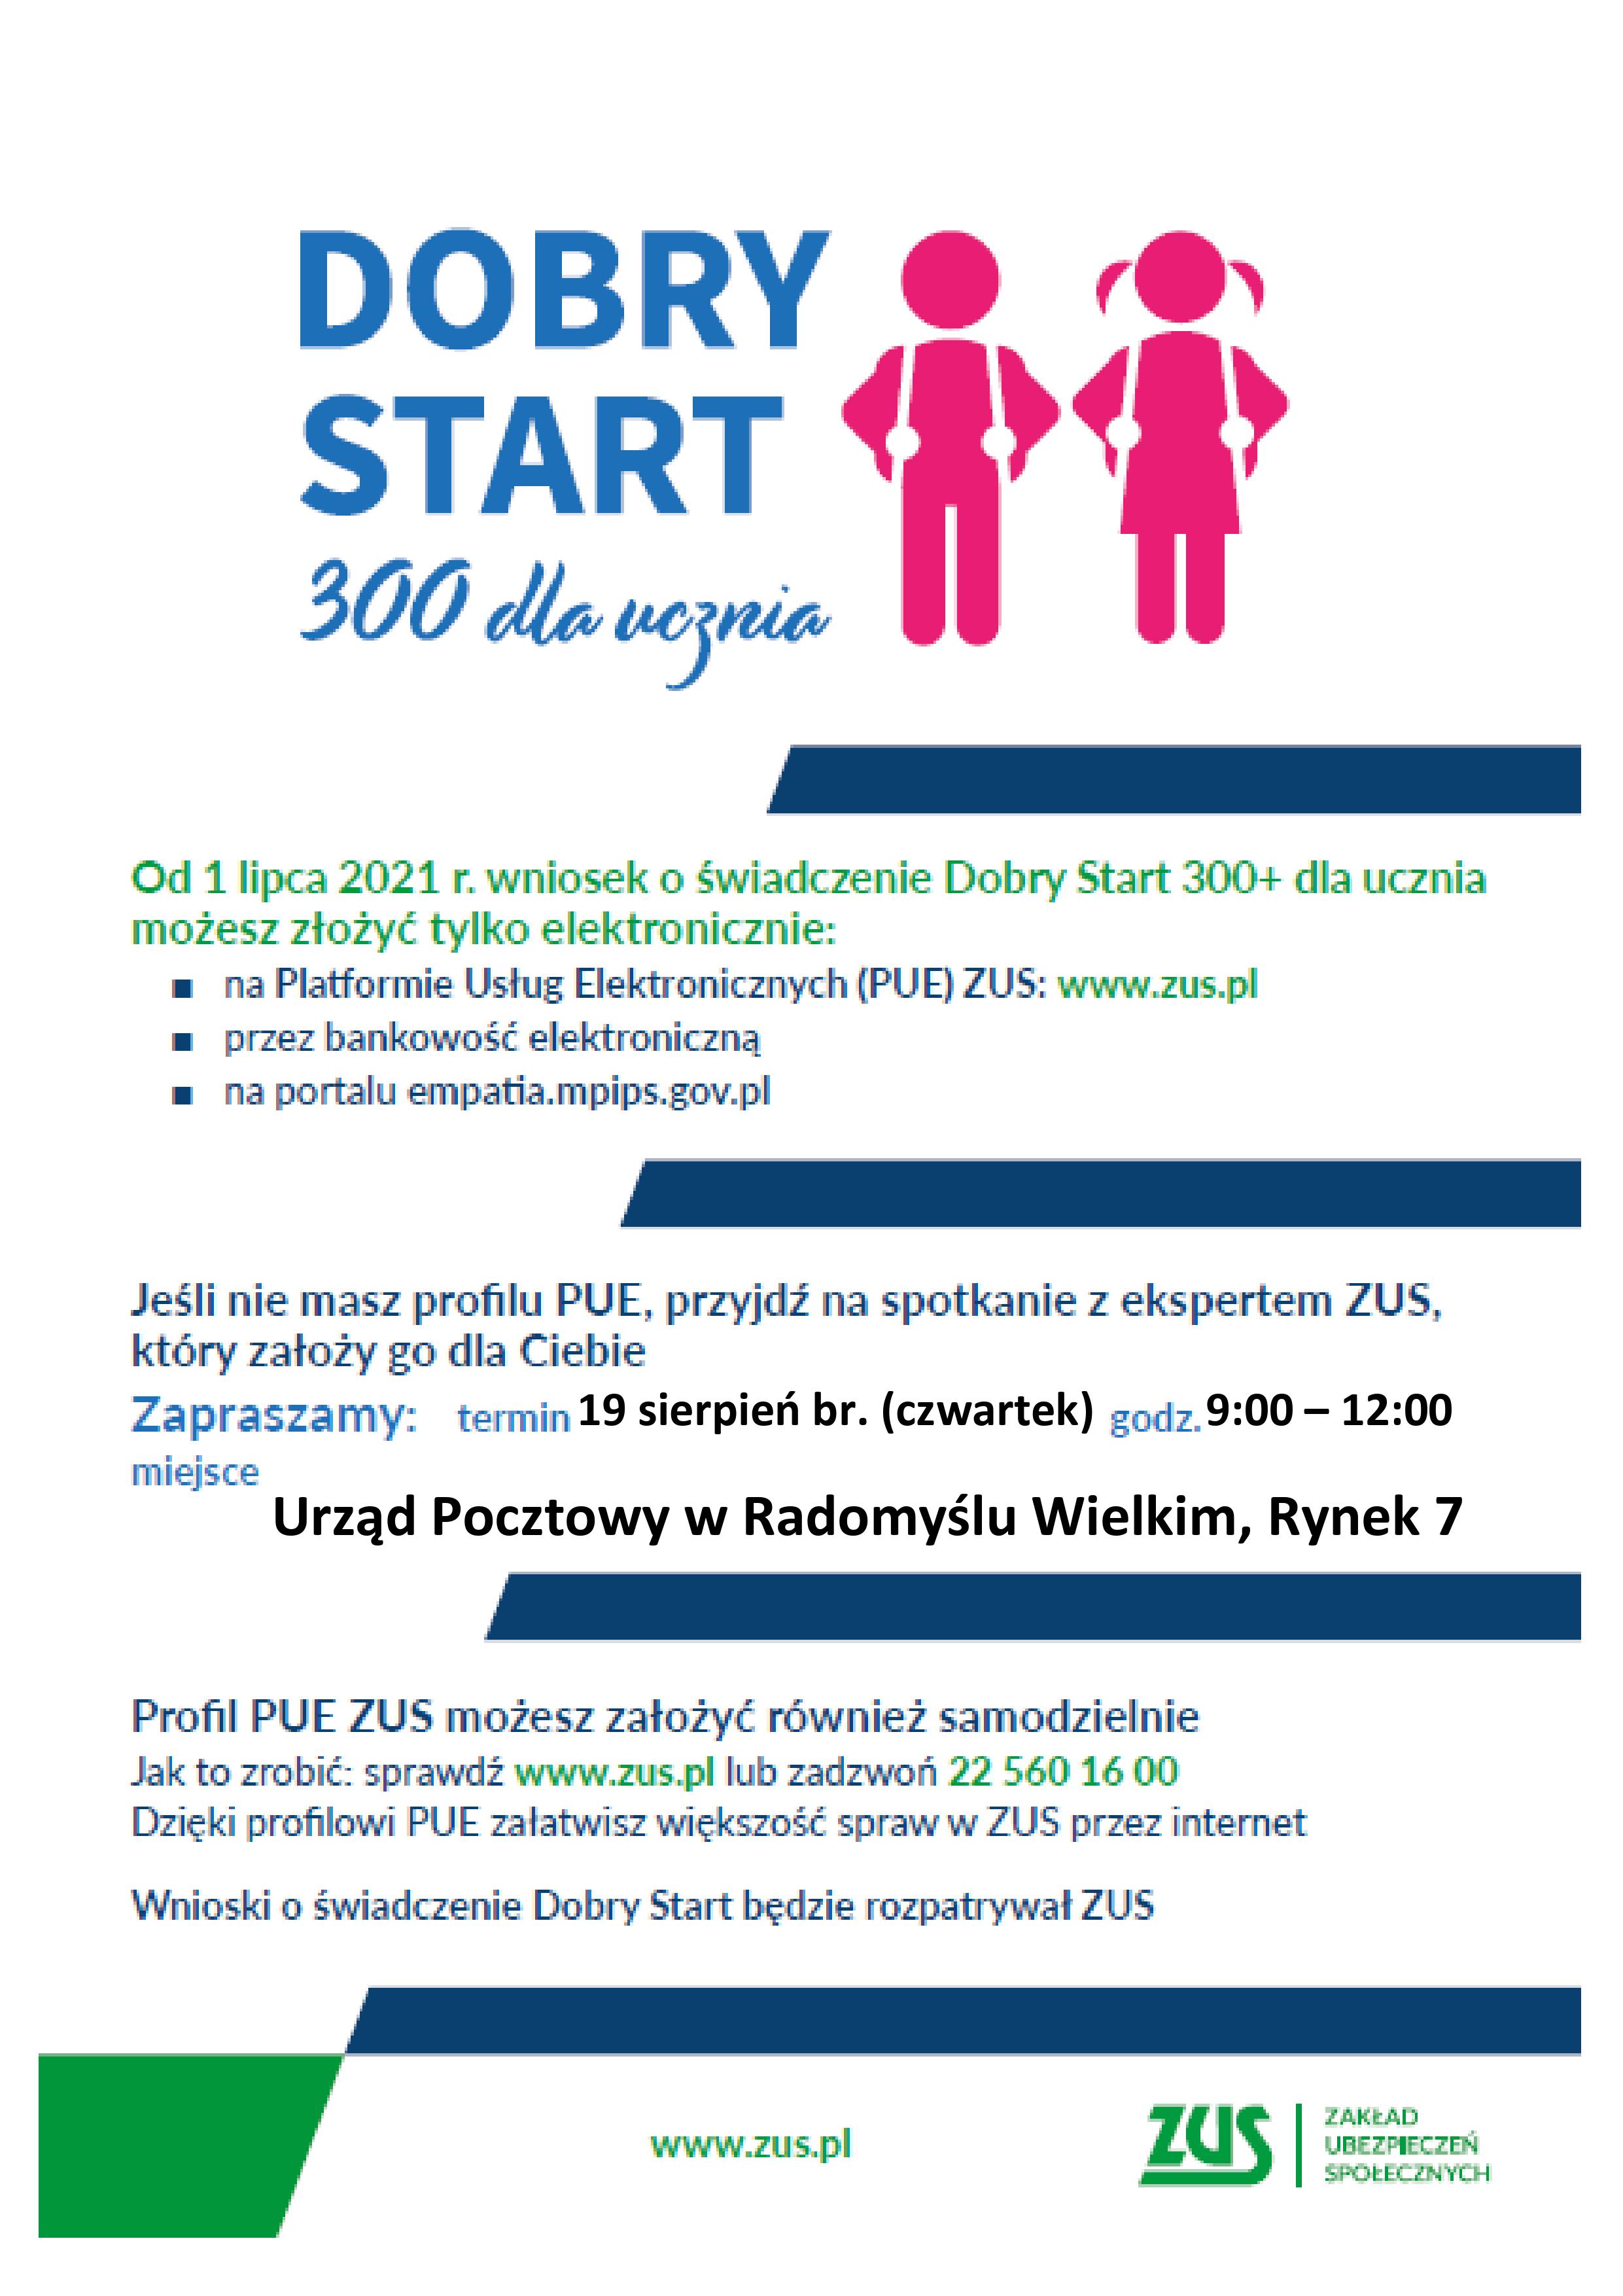 Plakat Dobry Start 300 dla ucznia - spotkanie z ekspertem ZUS - Urząd Pocztowy w Radomyślu Wielkim 19 sierpnia 2021 roku